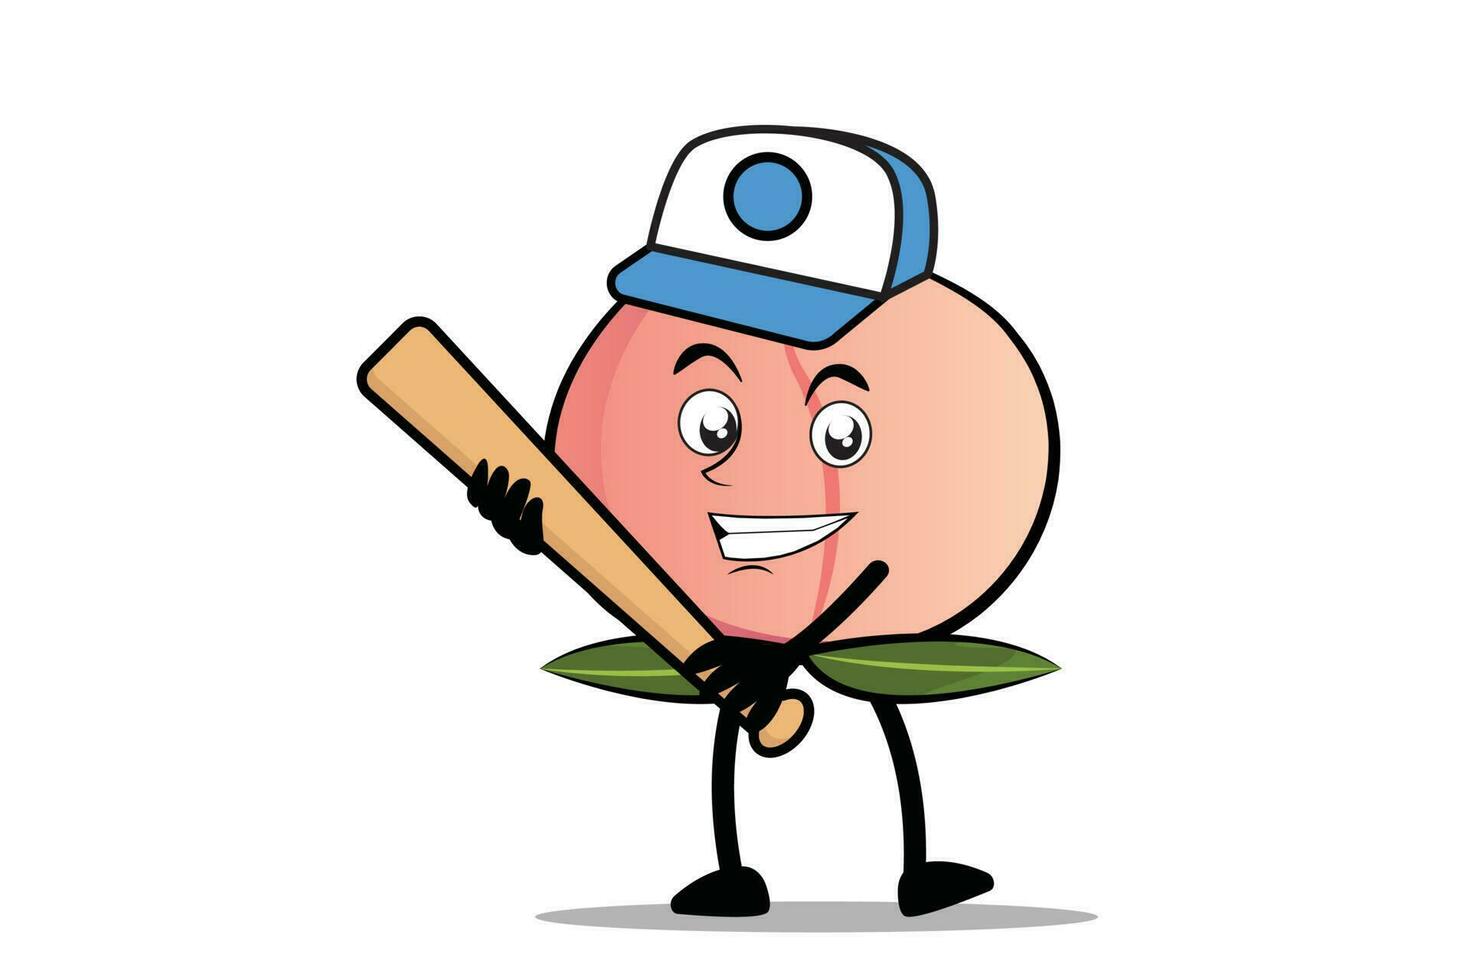 pêssego desenho animado mascote ou personagem segurando uma beisebol bastão Como a mascote do a beisebol equipe vetor